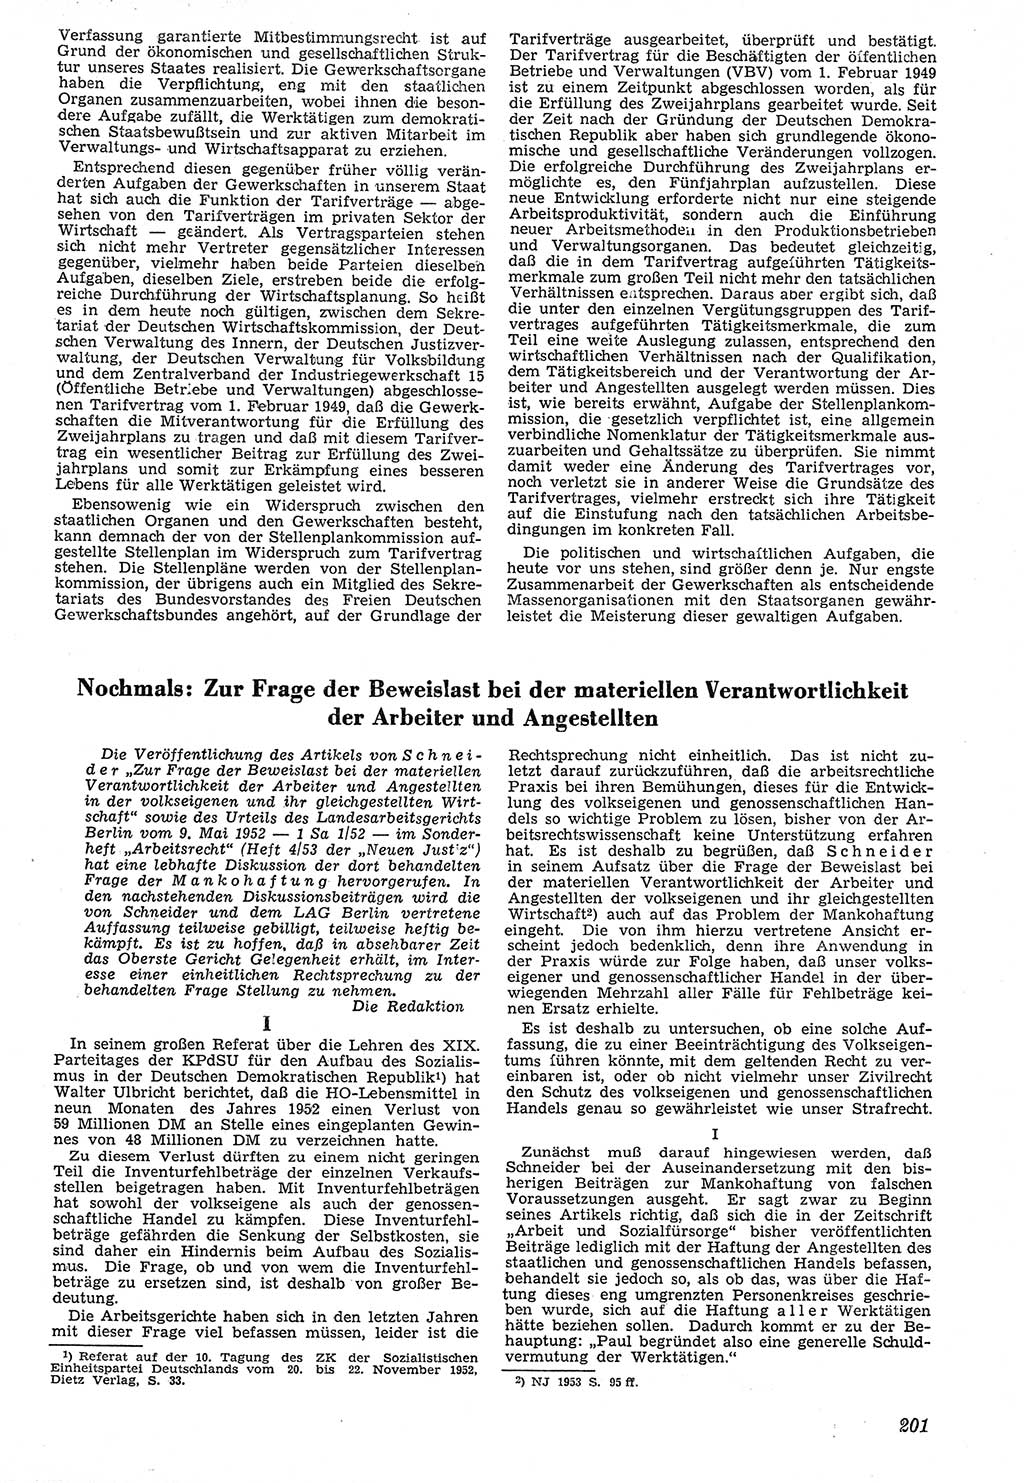 Neue Justiz (NJ), Zeitschrift für Recht und Rechtswissenschaft [Deutsche Demokratische Republik (DDR)], 7. Jahrgang 1953, Seite 201 (NJ DDR 1953, S. 201)